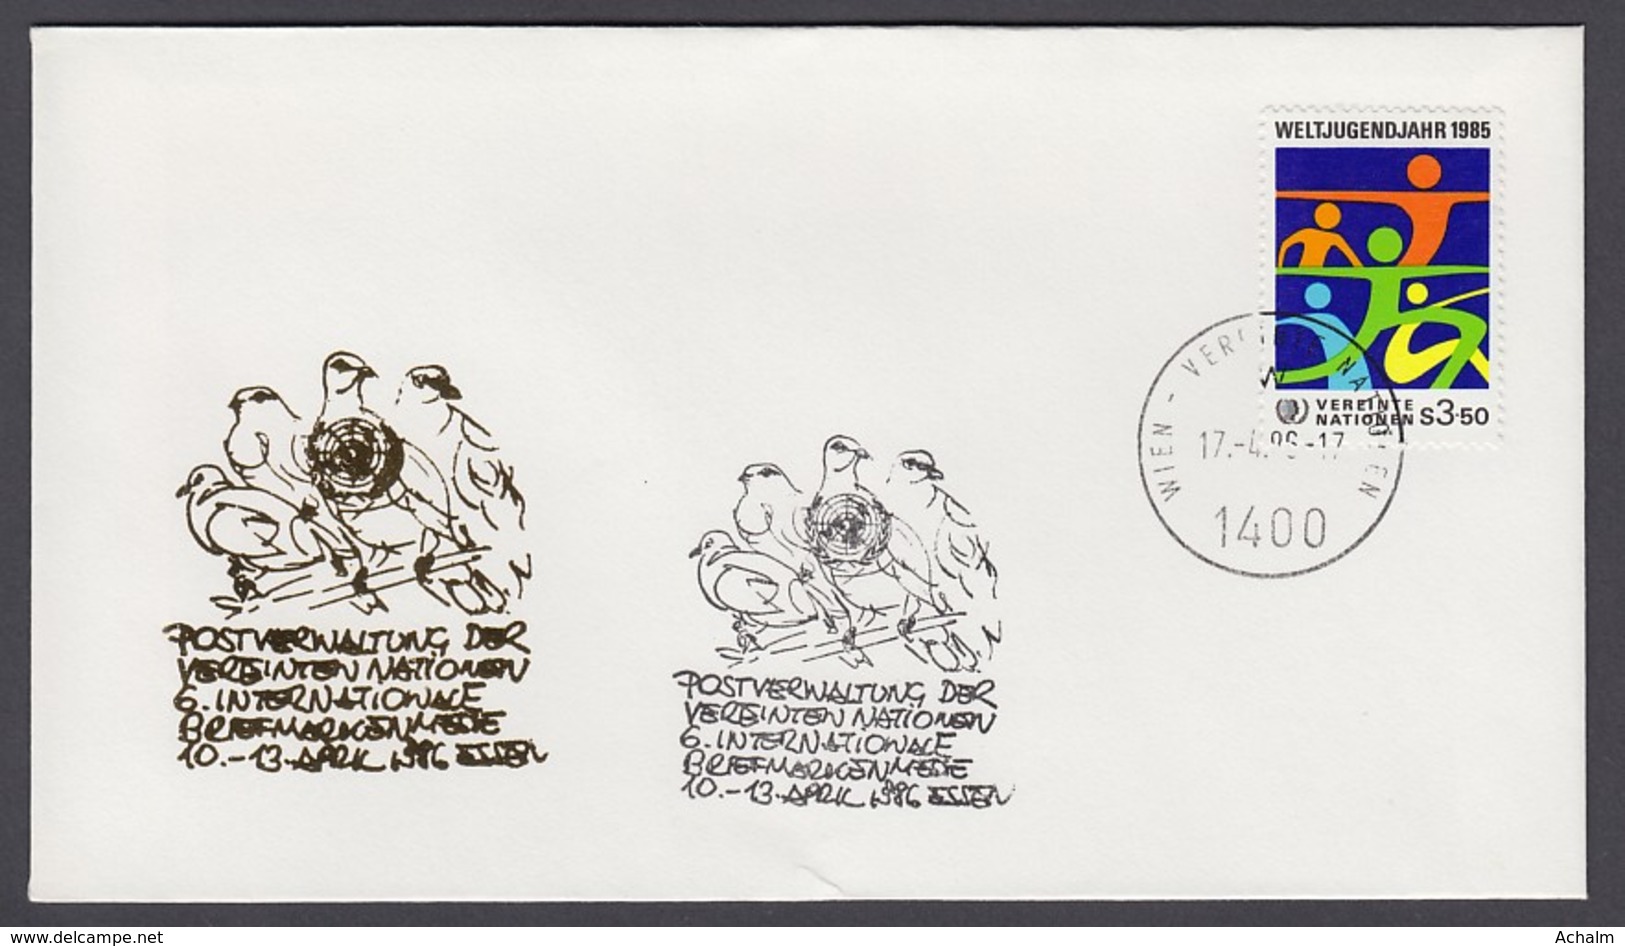 UNO Wien-UN Vienna - Beleg 1986 - MiNr. 45 - Gold-Sonderstempel - Briefmarkenmesse 86, Essen - UNO